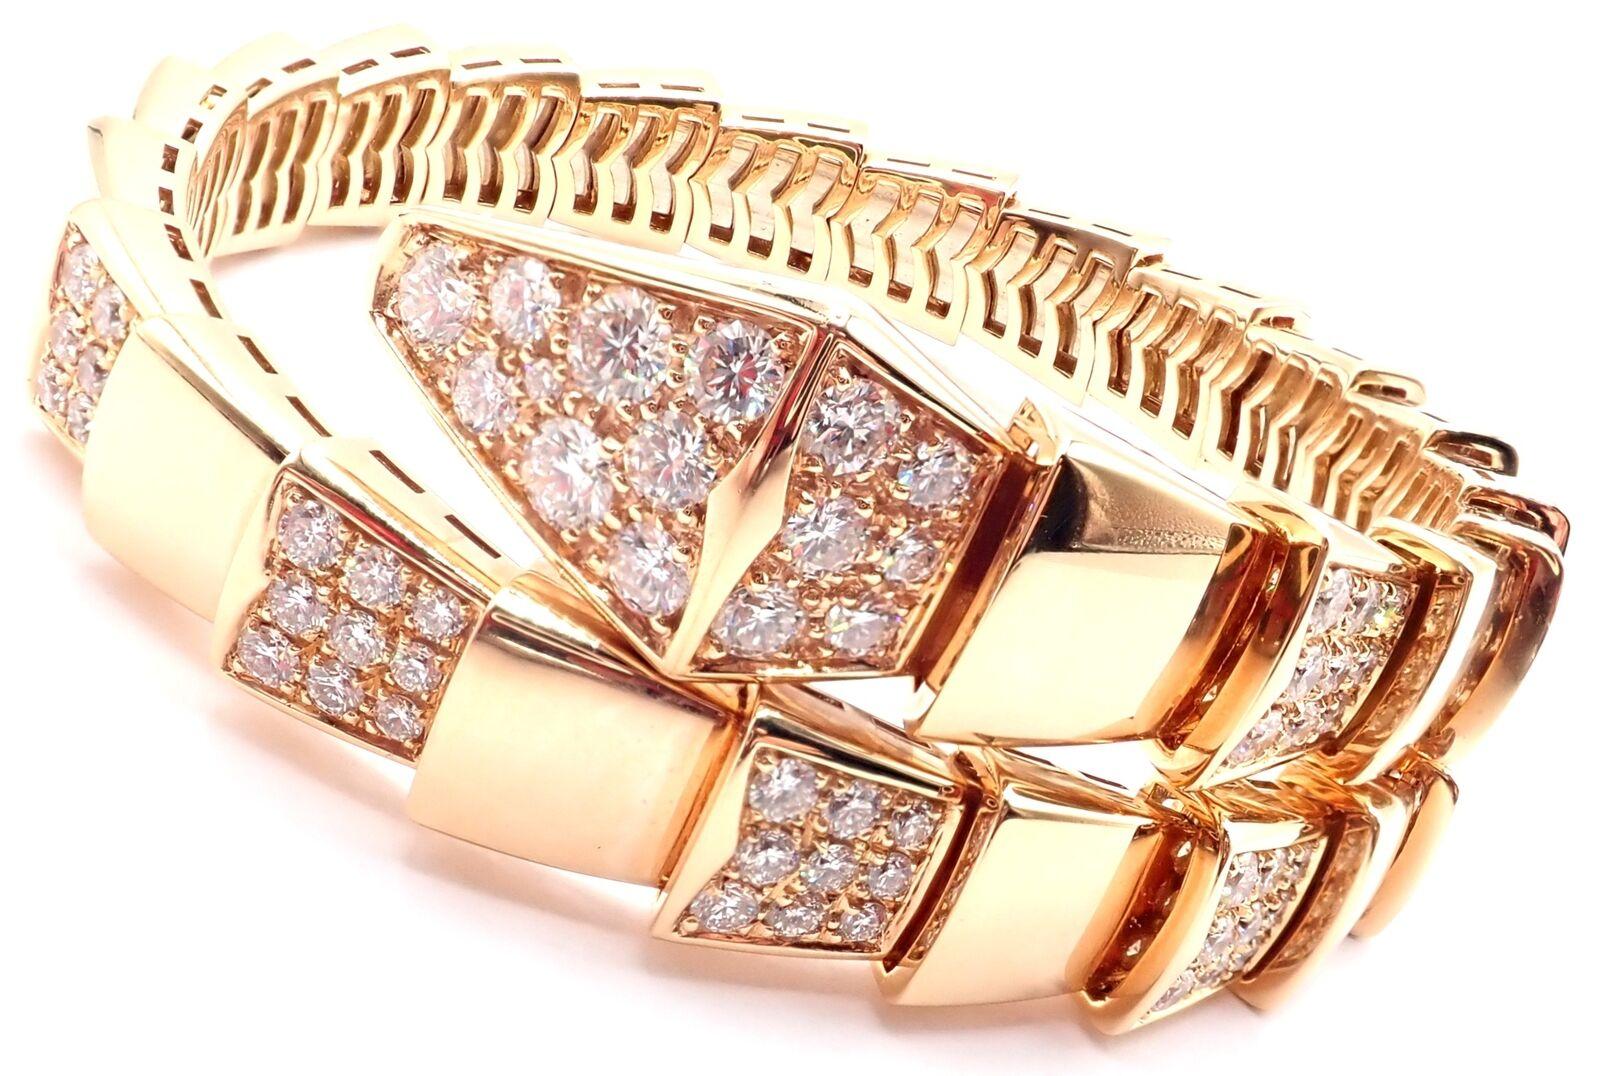 Bracelet en or rose 18k avec diamants Serpenti Viper Snake Bangle by Bulgari. 
Avec 127 diamants ronds de taille brillante, pureté VVS1, couleur E, poids total approximatif de 7ct.
Détails :
Taille : Taille moyenne, 17cm, 6.7